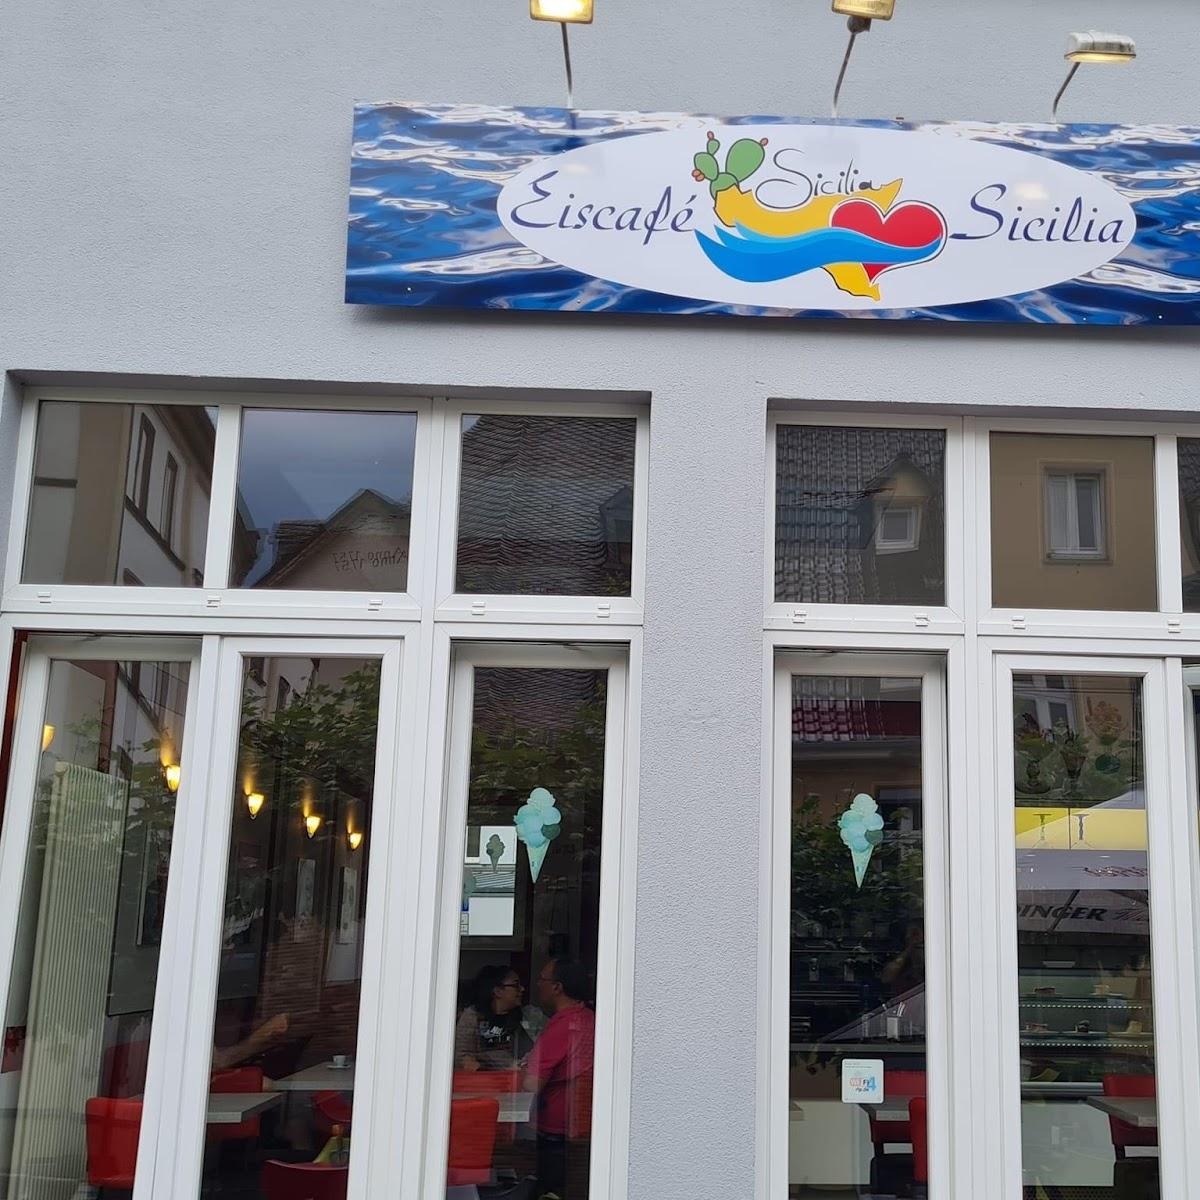 Restaurant "Eis cafè sicilia" in Bendorf